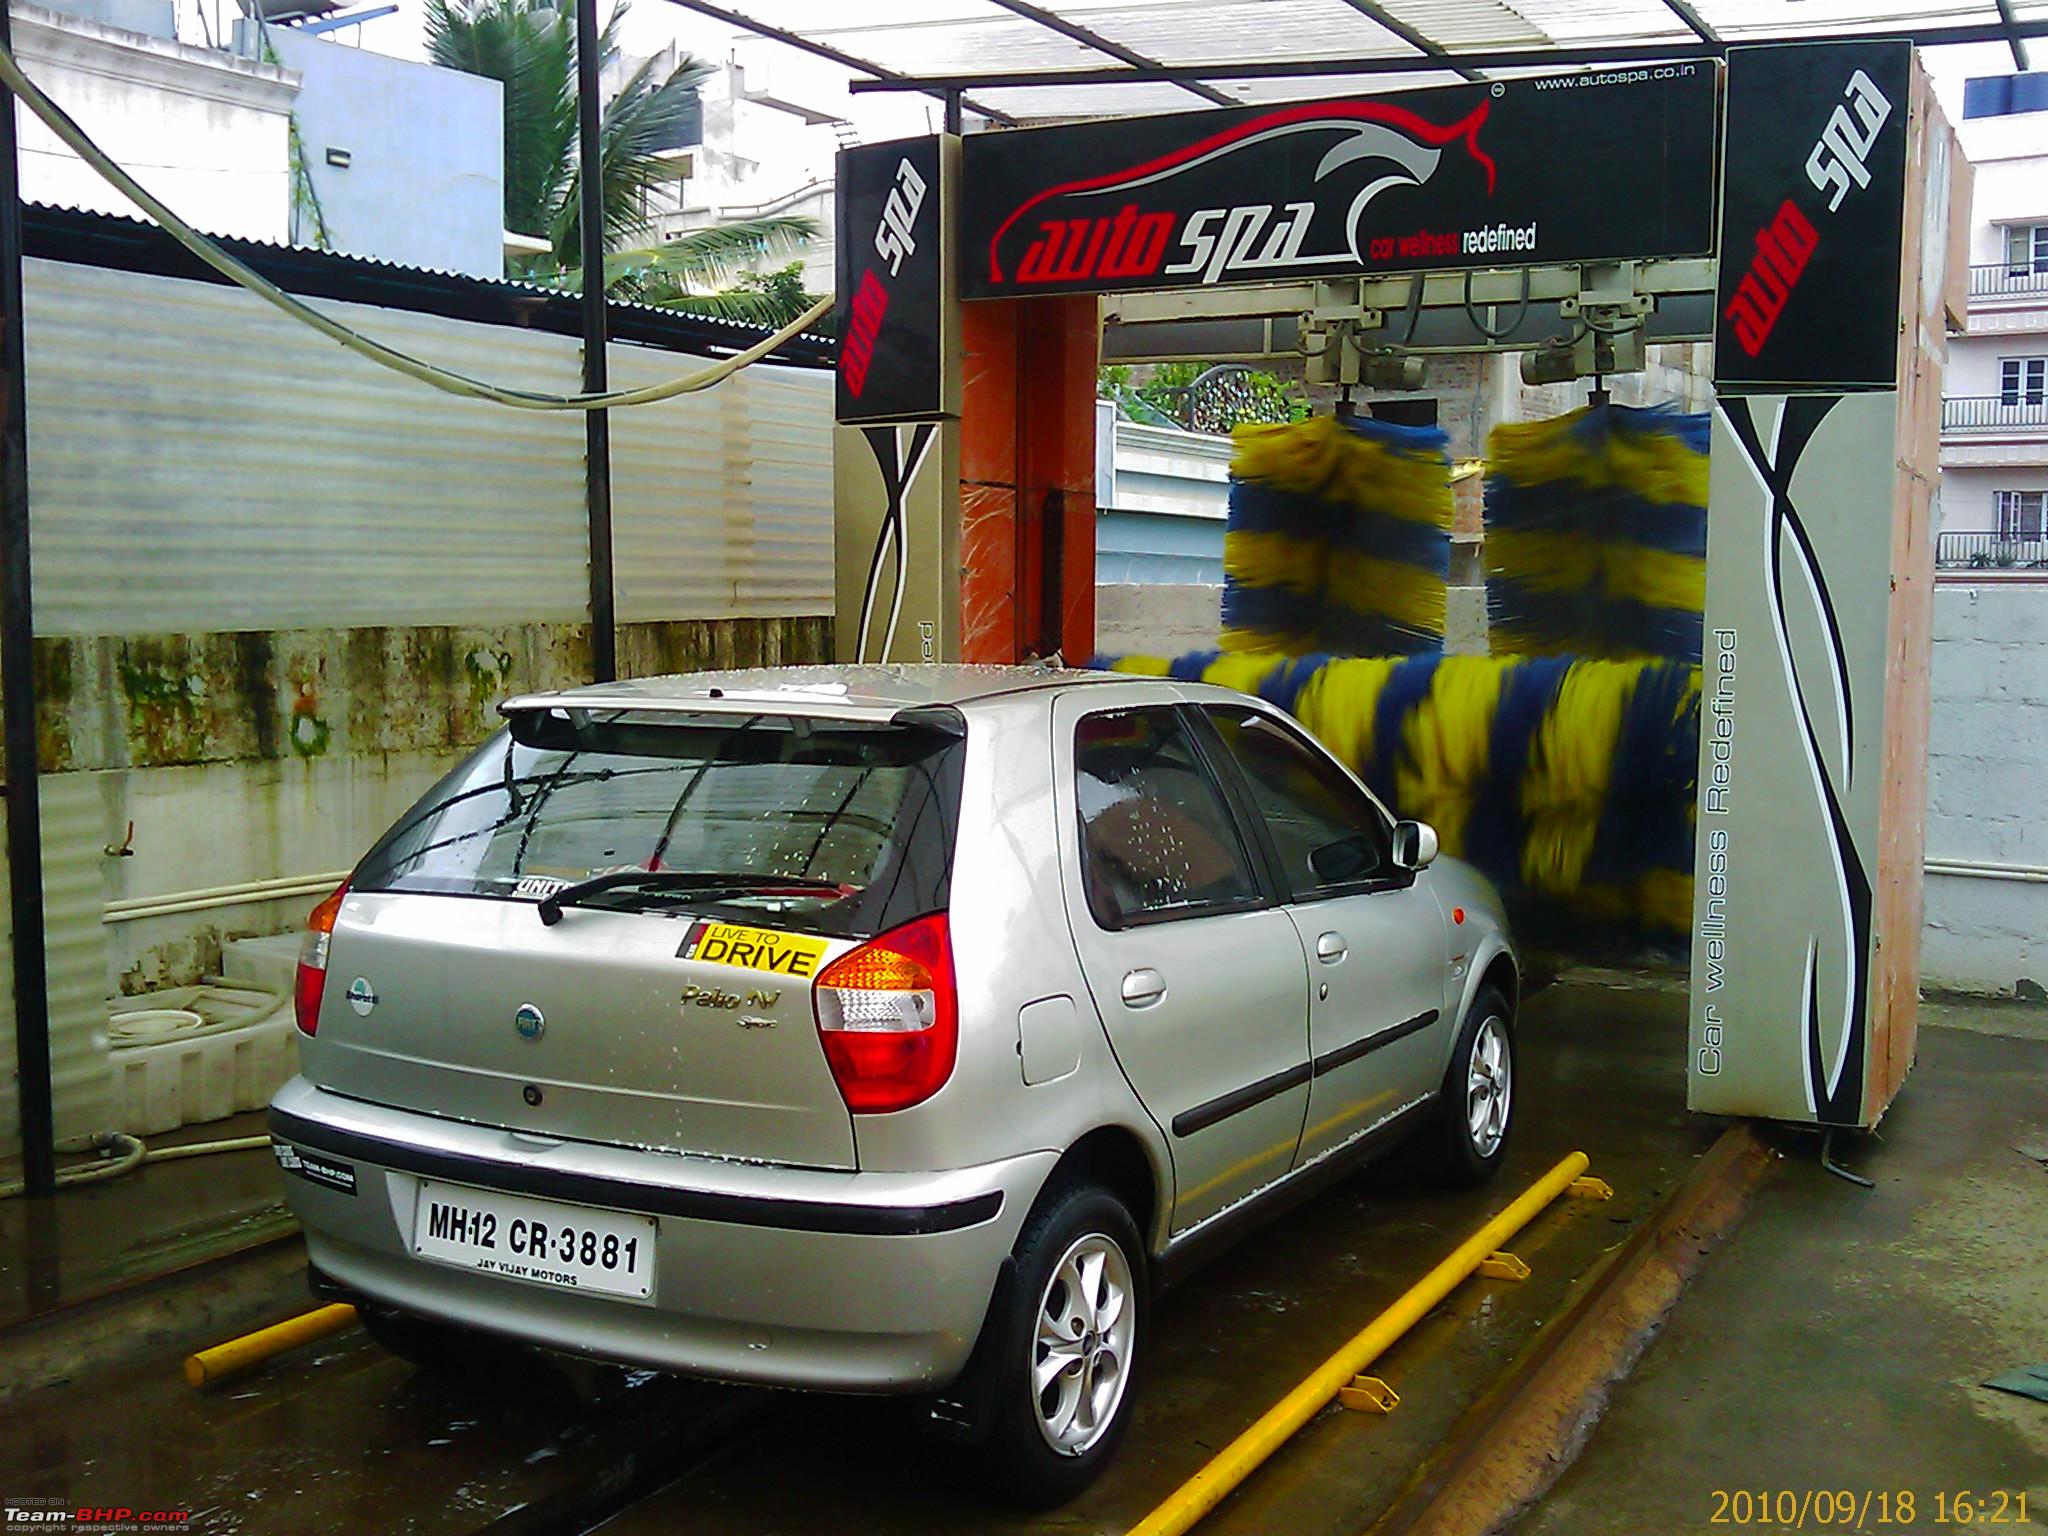 Reviews of btm car spa - Vehicle services - Bangalore